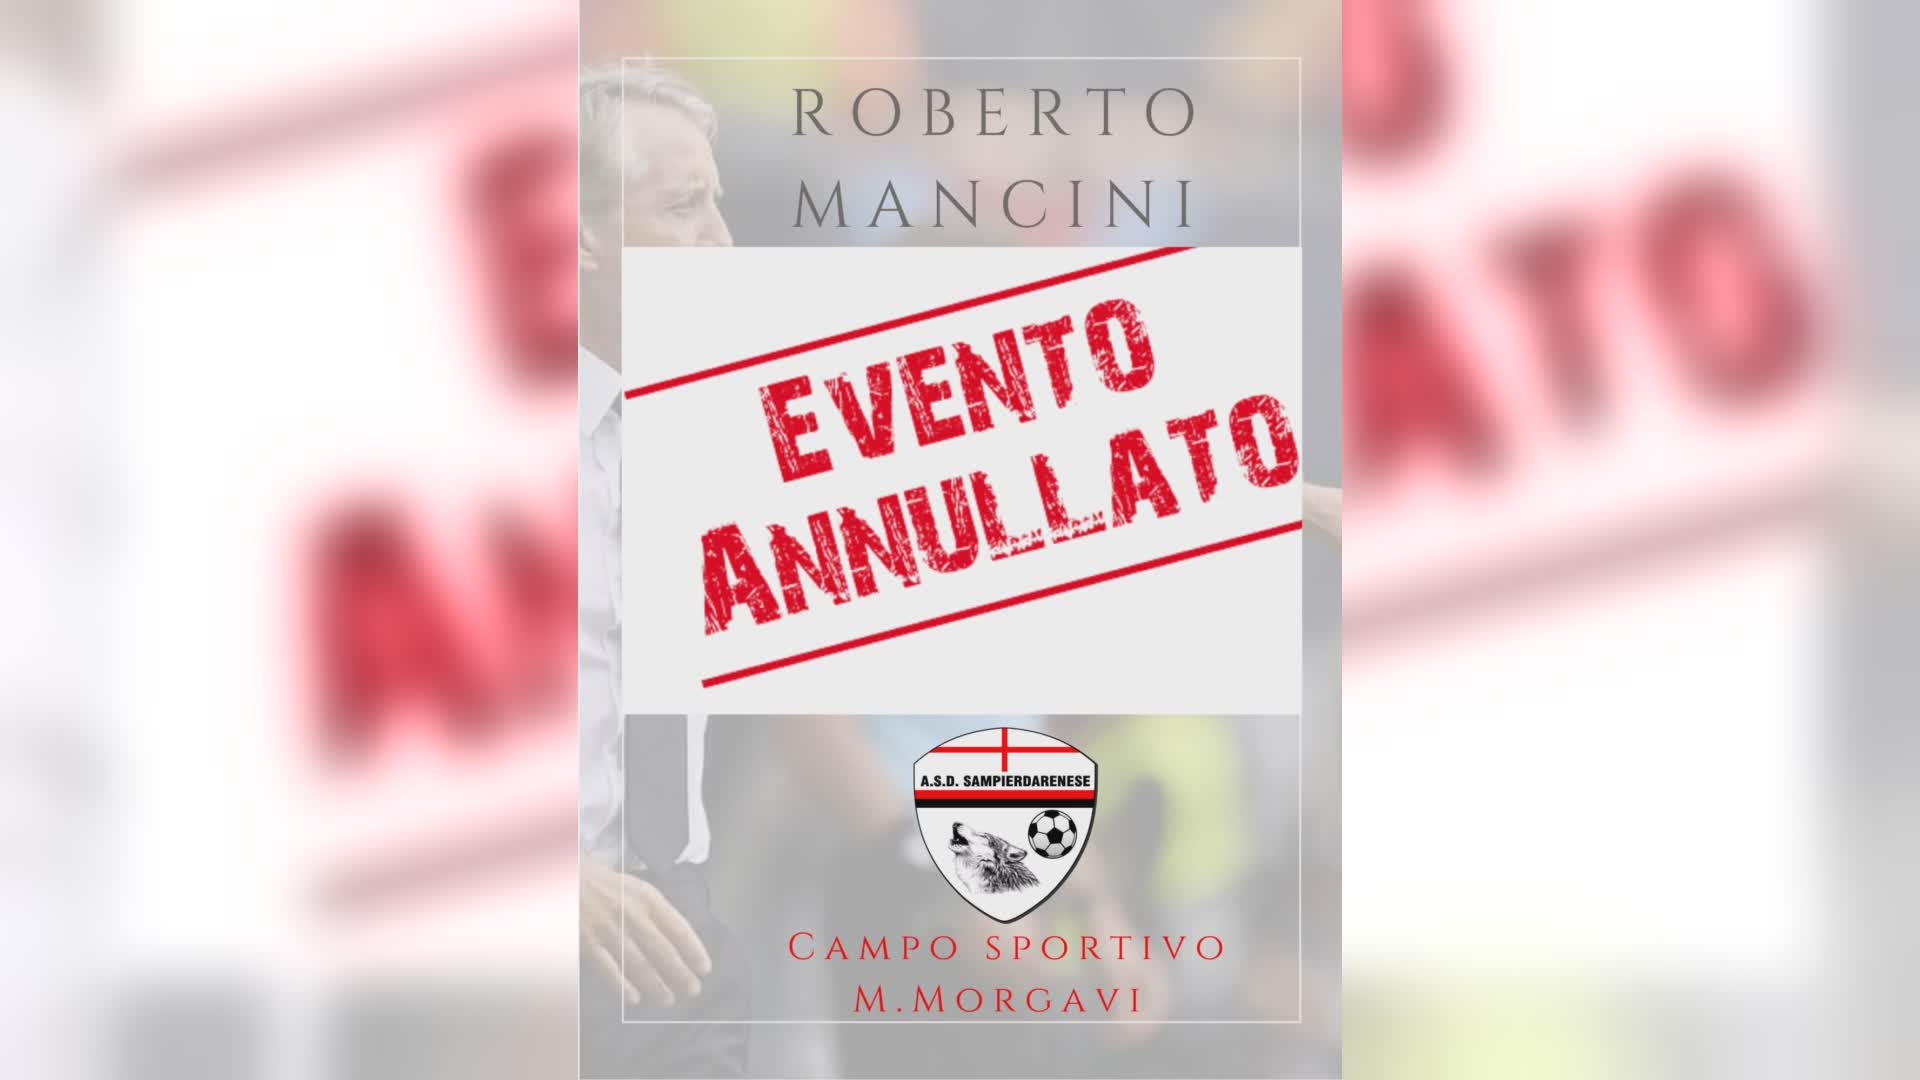 Mancini, annullata la visita al Morgavi di Sampierdarena. Il presidente Pittaluga: "Impegni improvvisi del mister, verrà alla prima occasione utile"